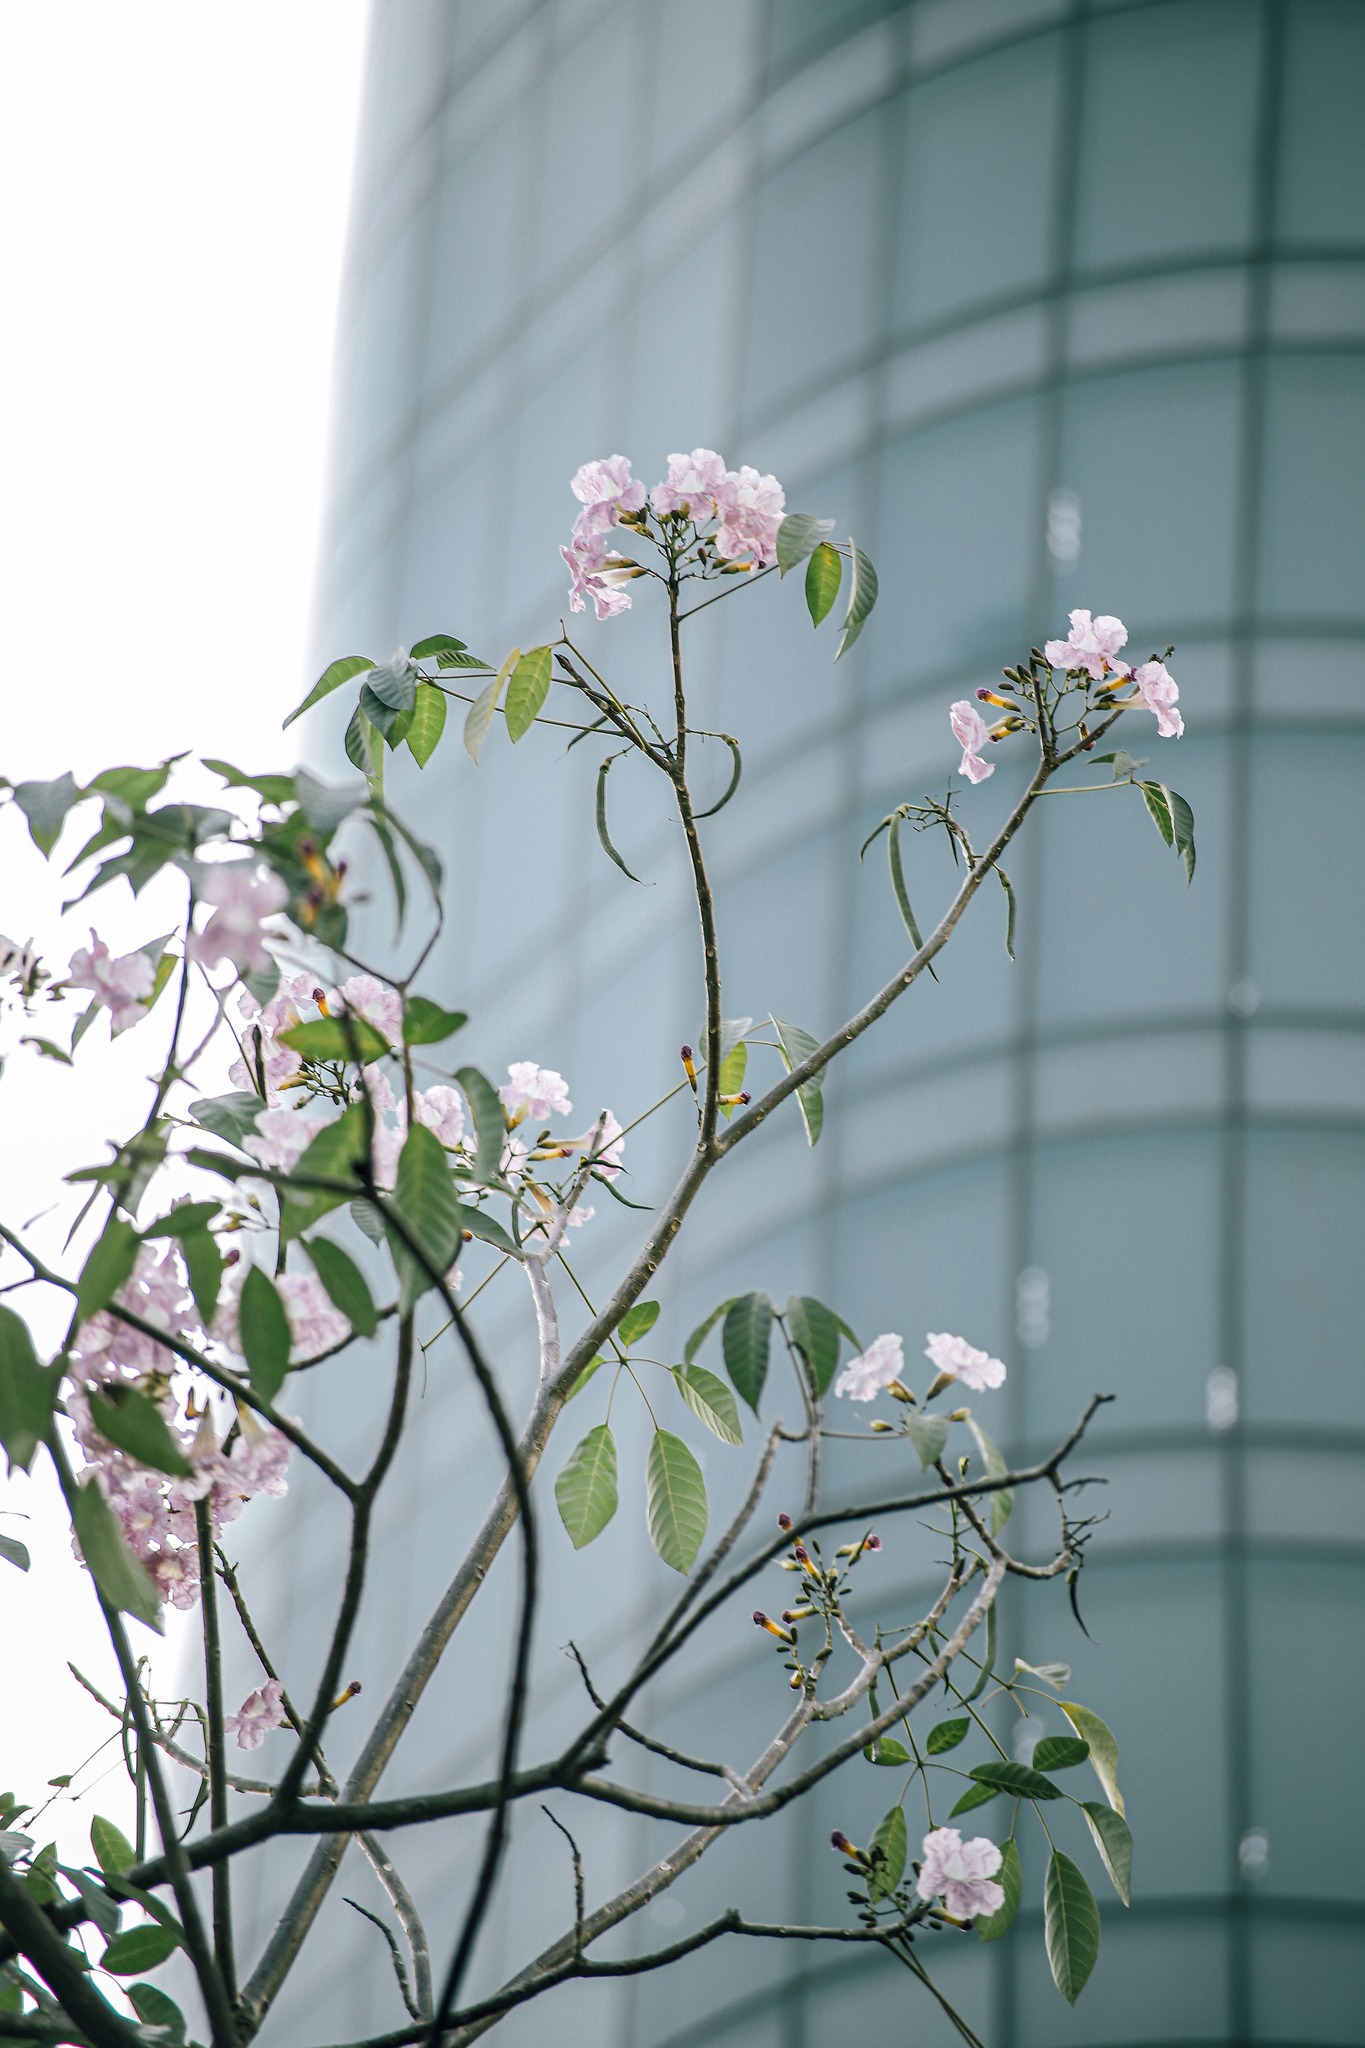 Mùa kèn hồng rợp trời Sài Gòn, chợt thấy thành phố mộng mơ biết bao giữa sắc hoa rực rỡ- Ảnh 7.